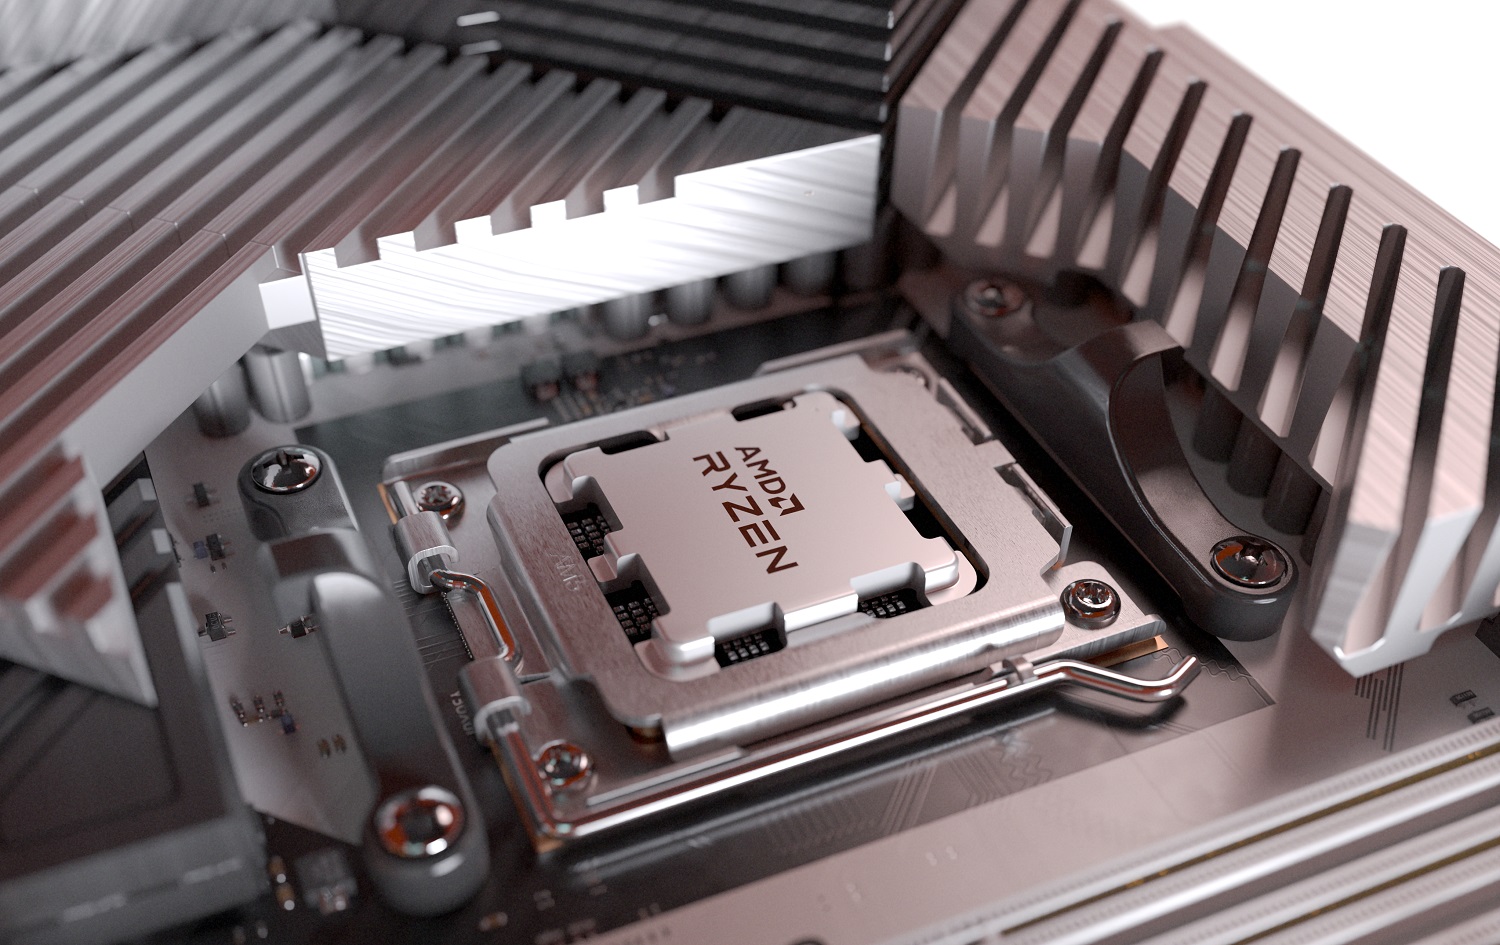 پردازنده AMD Ryzen 7000 در مادربرد قرار داده شده است.